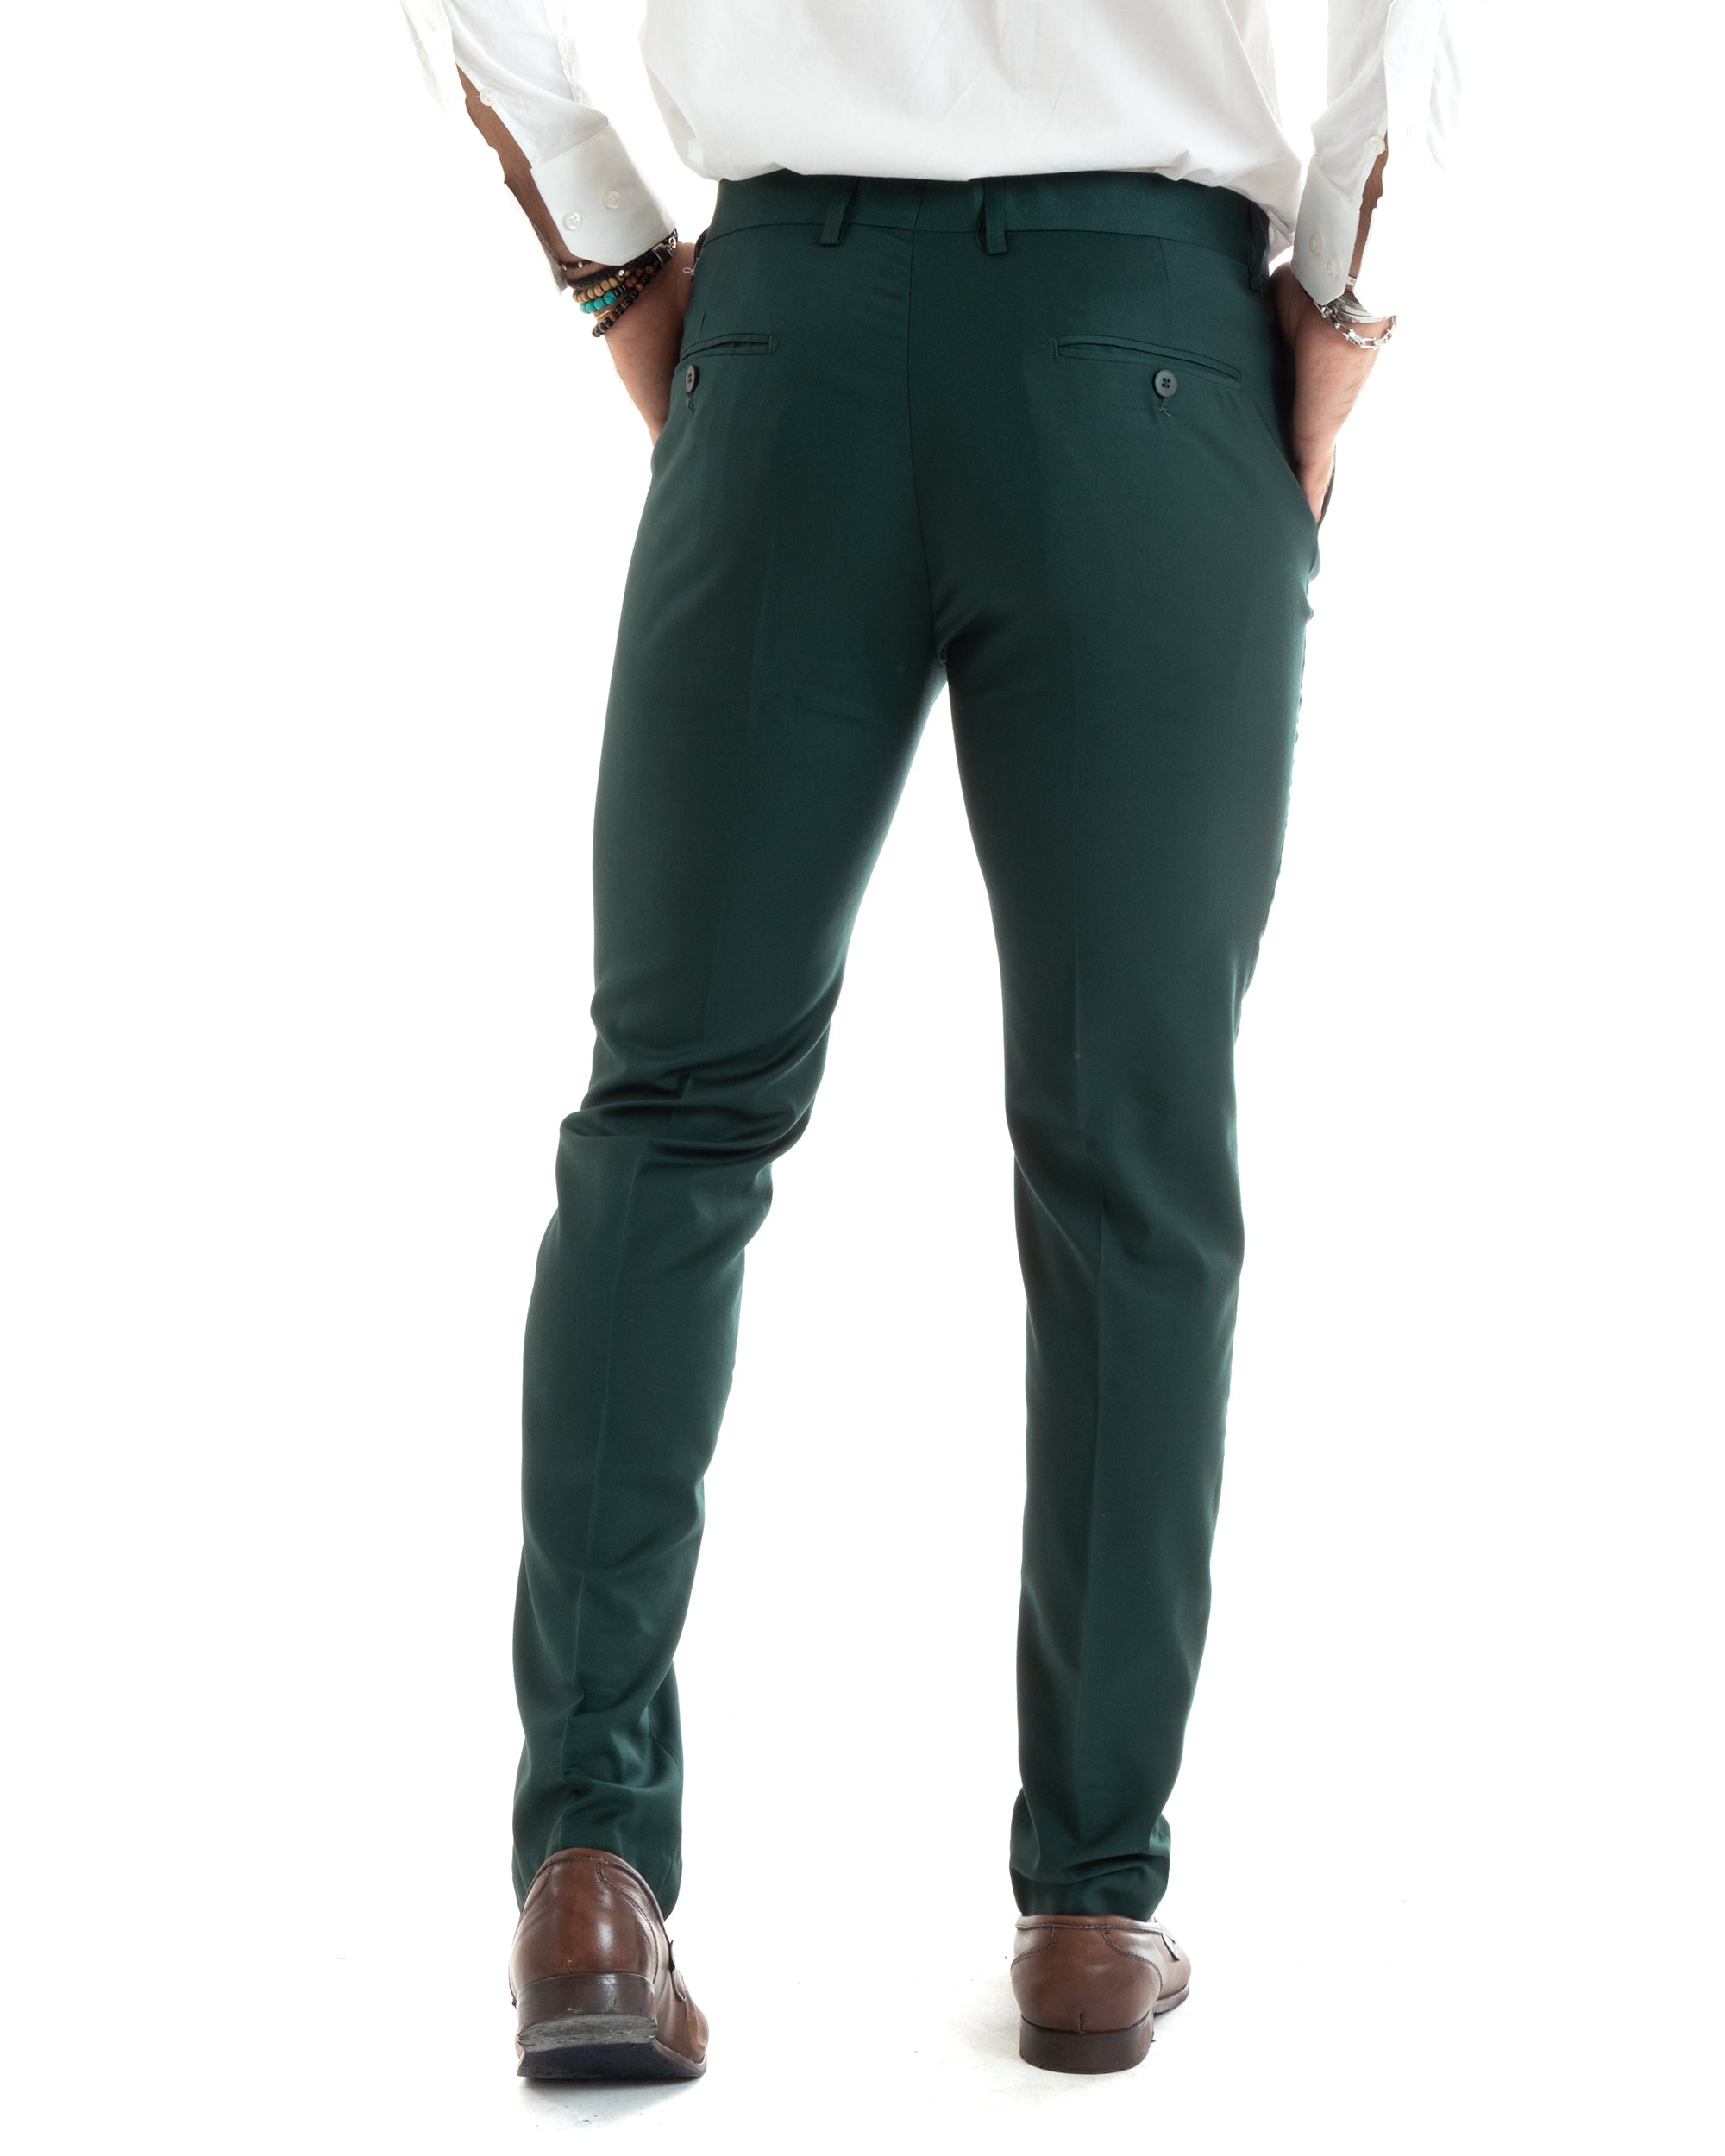 Abito Uomo Monopetto Vestito Completo Giacca Pantaloni Verde Elegante Casual GIOSAL-OU2434A